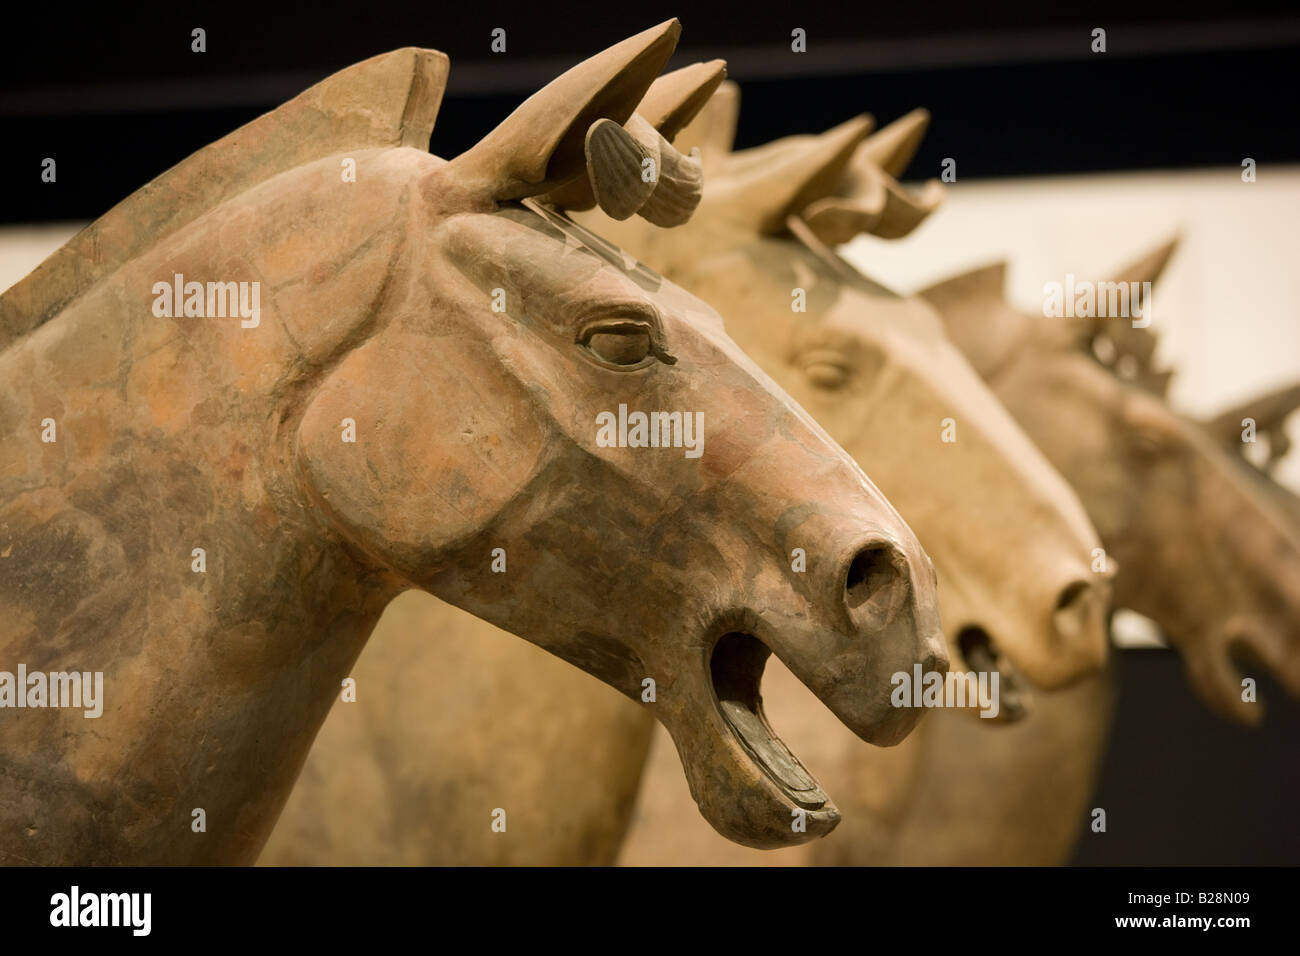 Les chevaux de l'Armée de terre cuite sur l'affichage dans le musée d'histoire de Shaanxi Xian Chine Banque D'Images